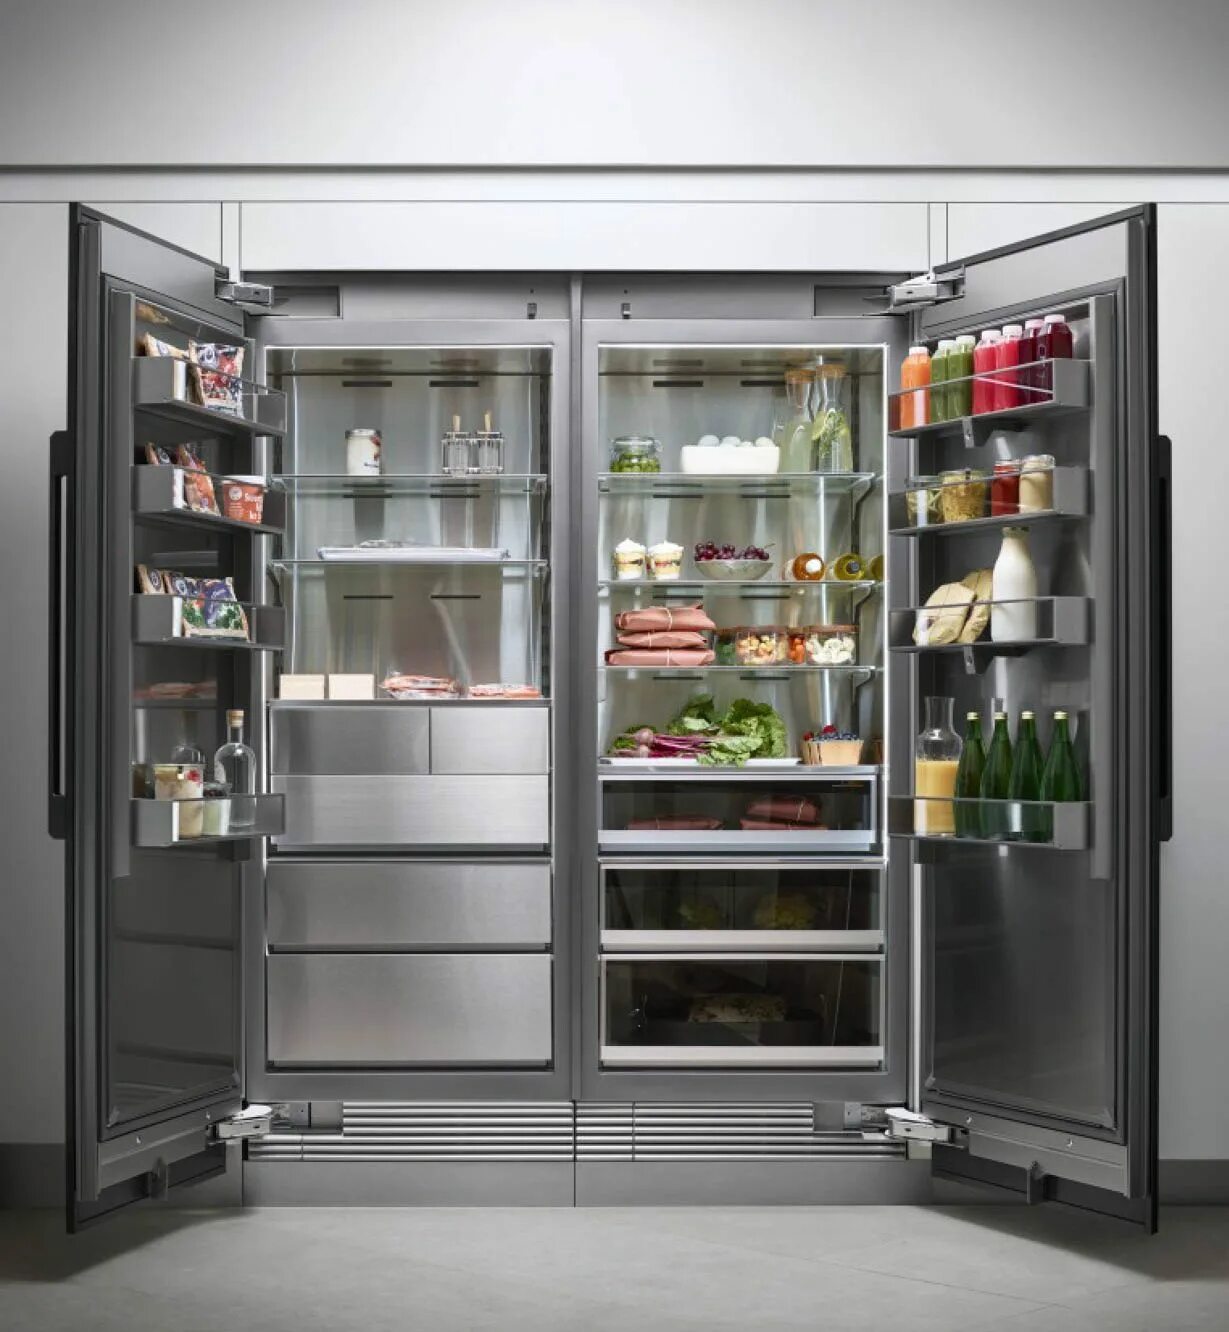 Холодильник Northland Refrigerator 60 SS.. Двухстворчатый холодильник Miele. Холодильник Samsung rs66n8100s9. Дорогой холодильник. Какие холодильники лучше по качеству